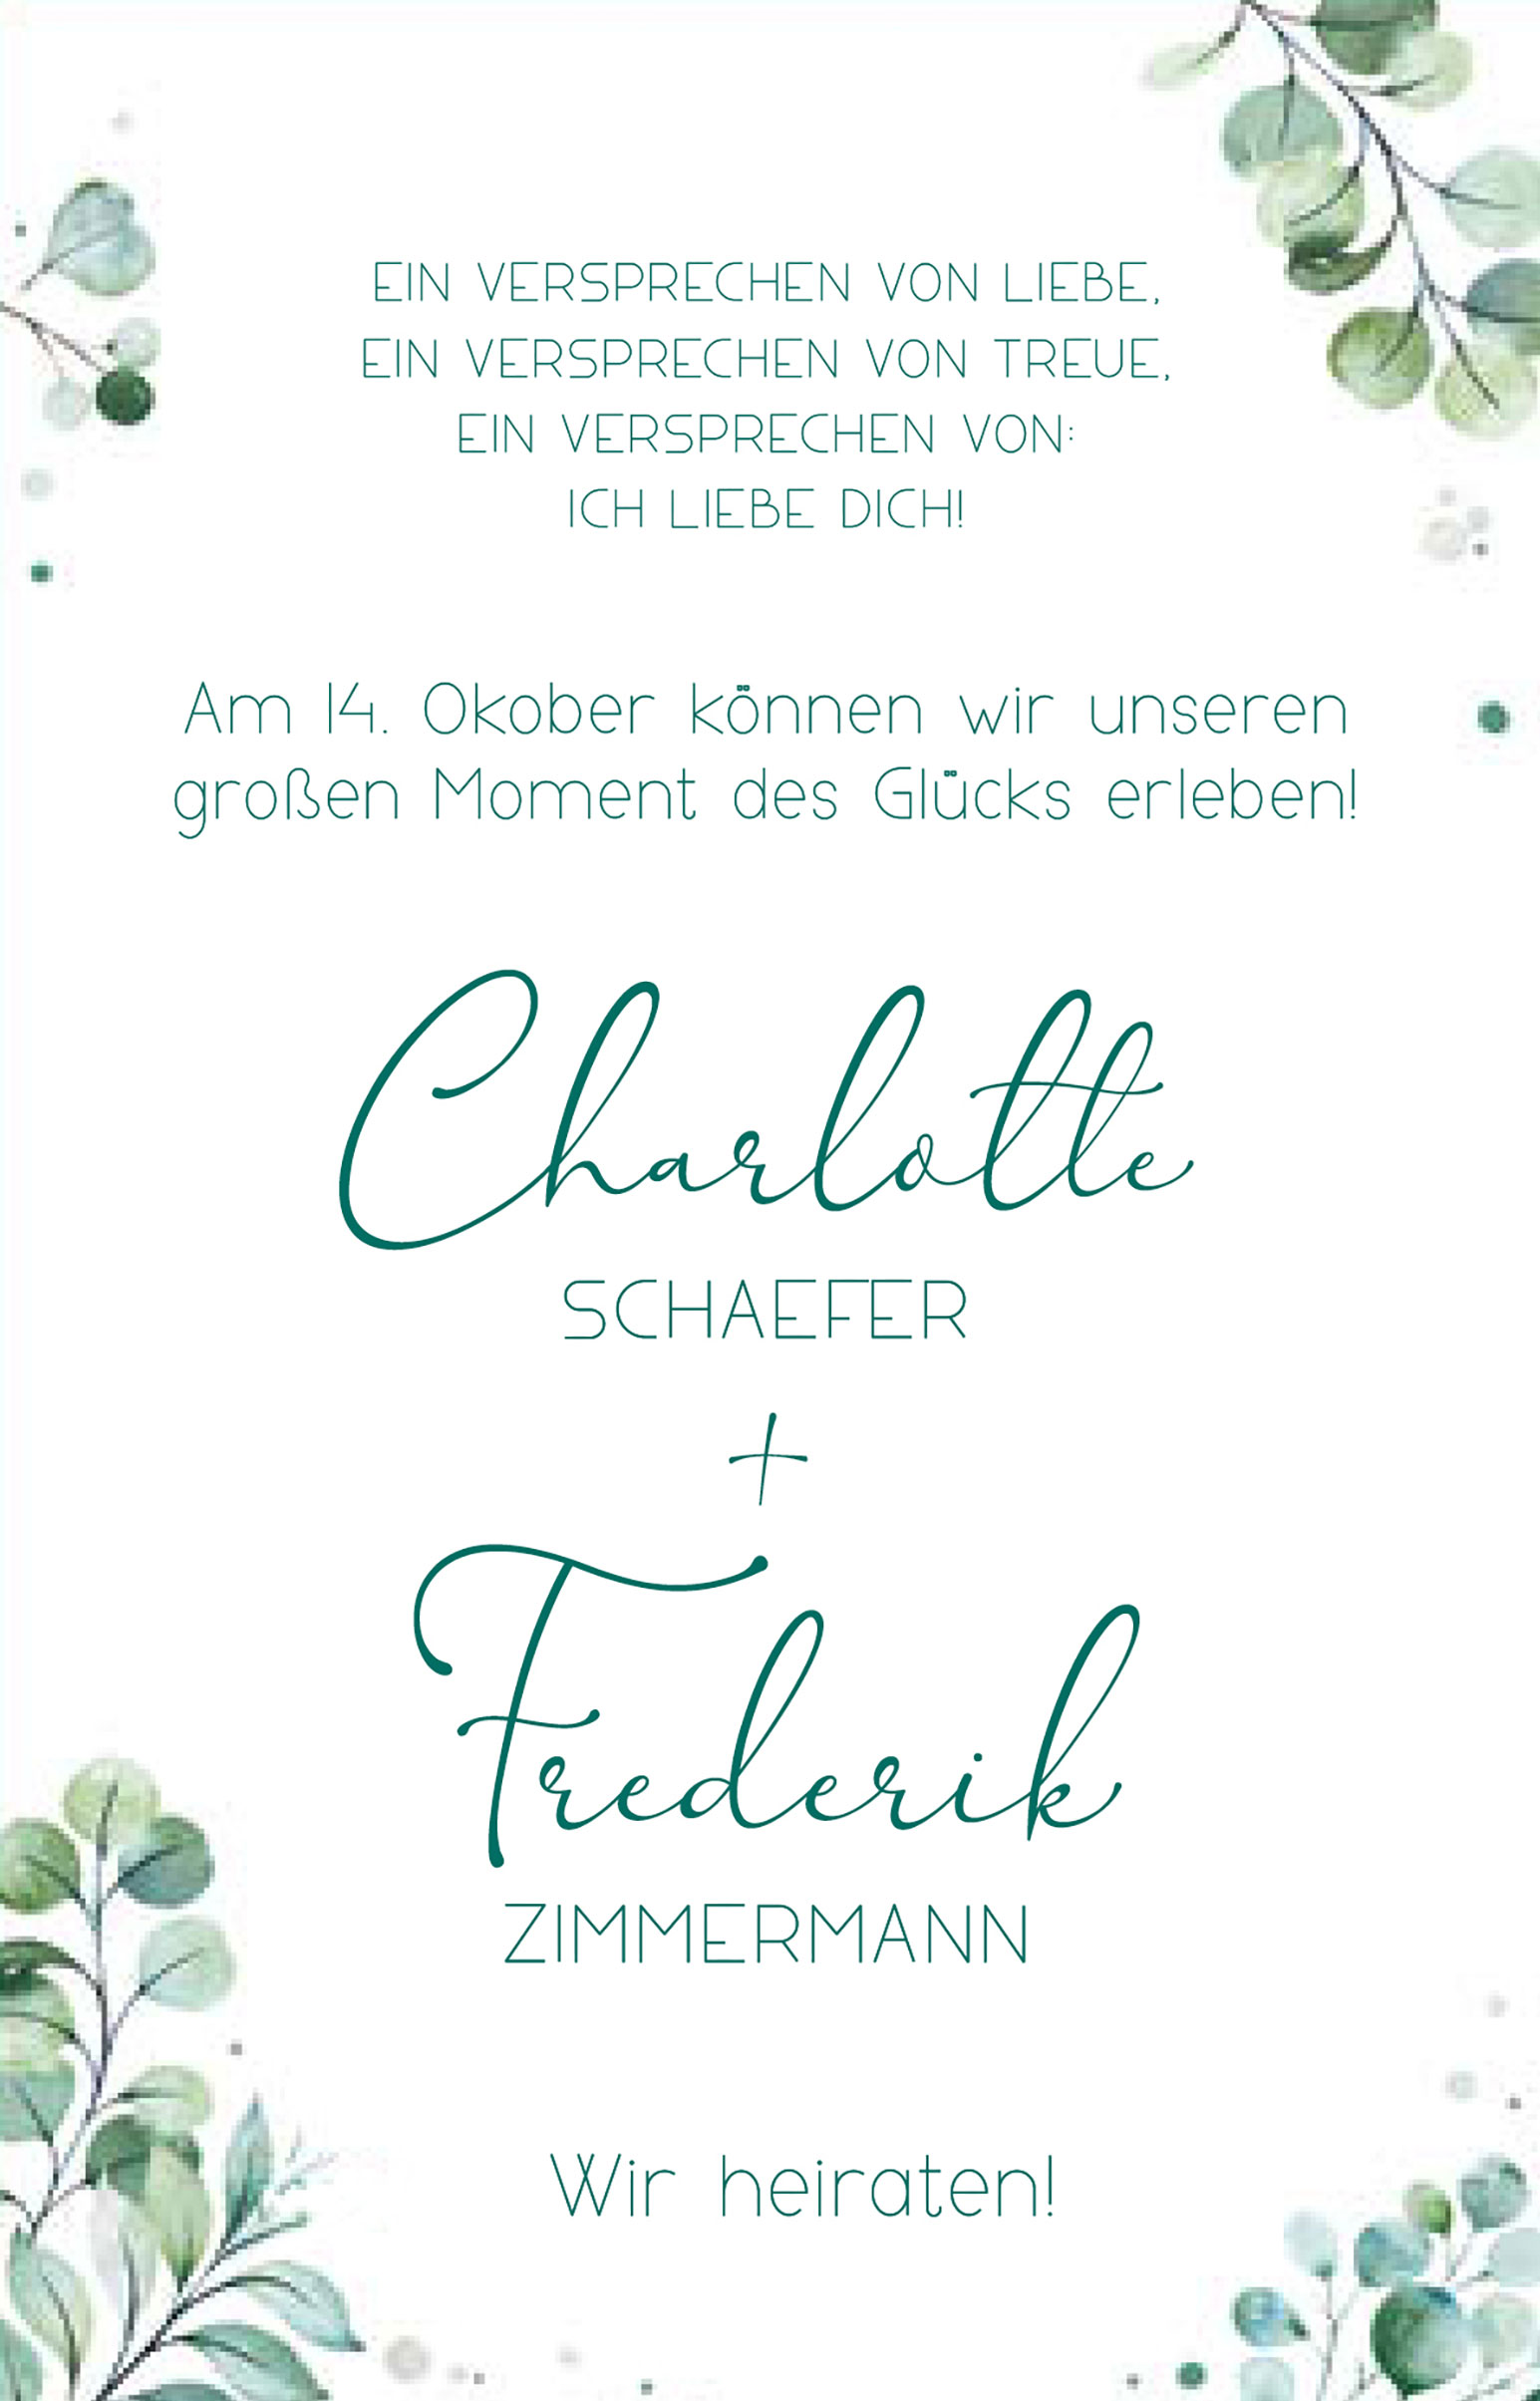 Weiße Textkarte mit Einladungstexten und grünen Blättern bedruckt.